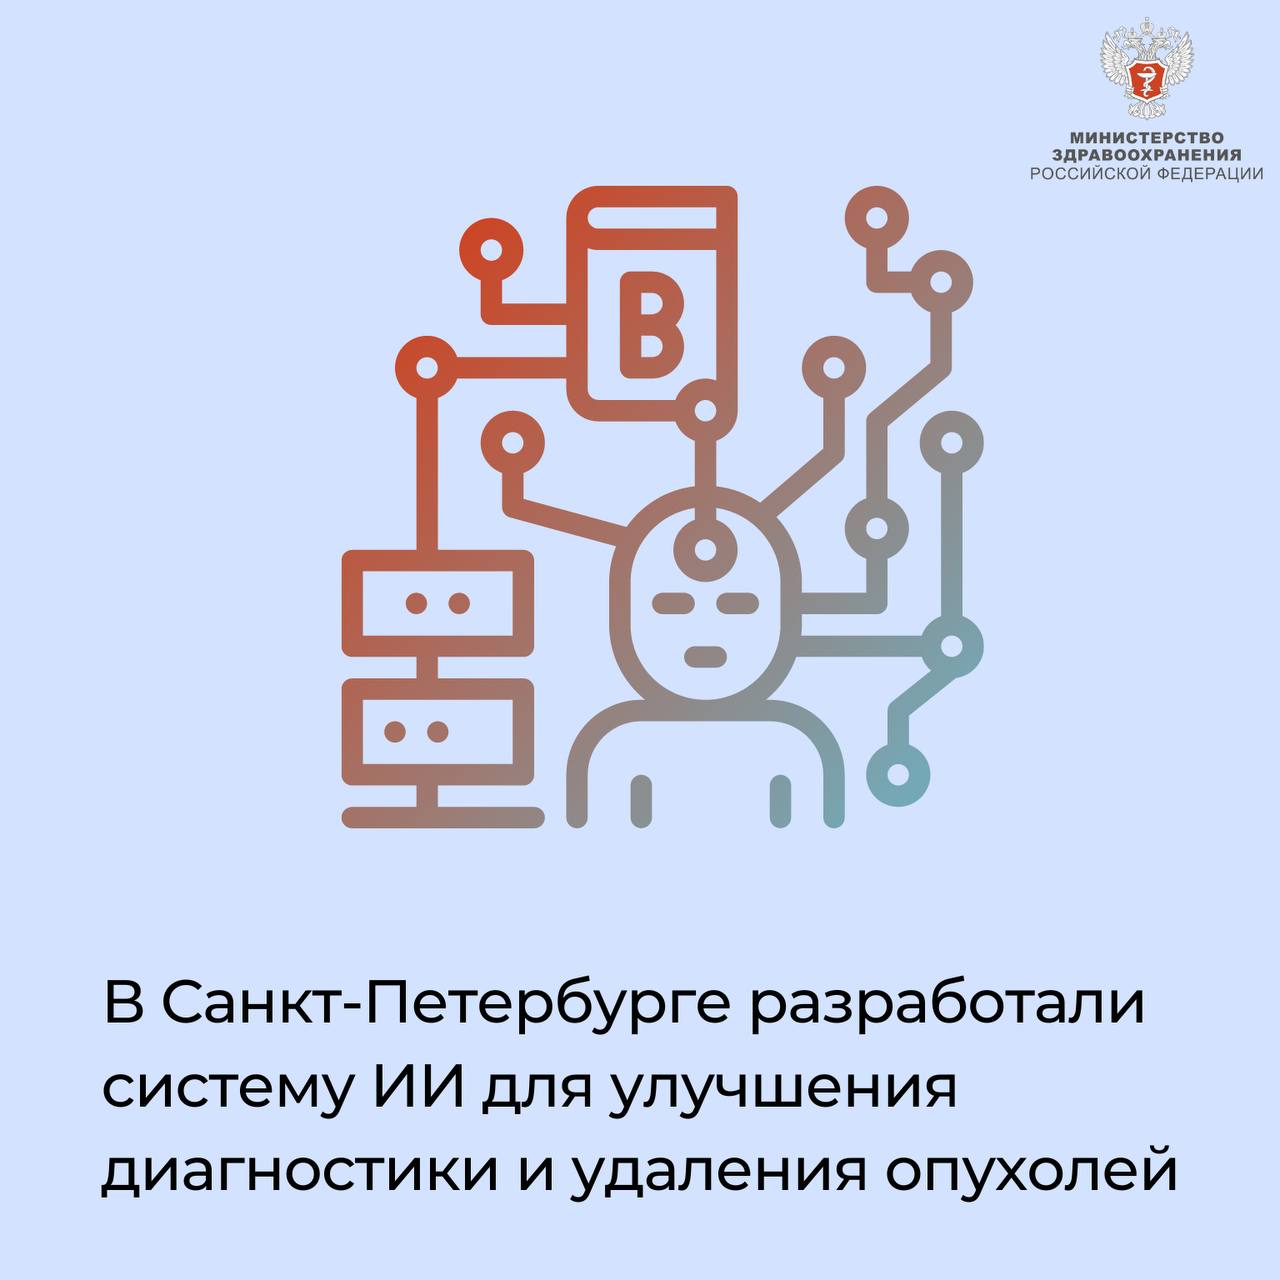 В Санкт-Петербурге разработали систему ИИ для улучшения диагностики и удаления опухолей